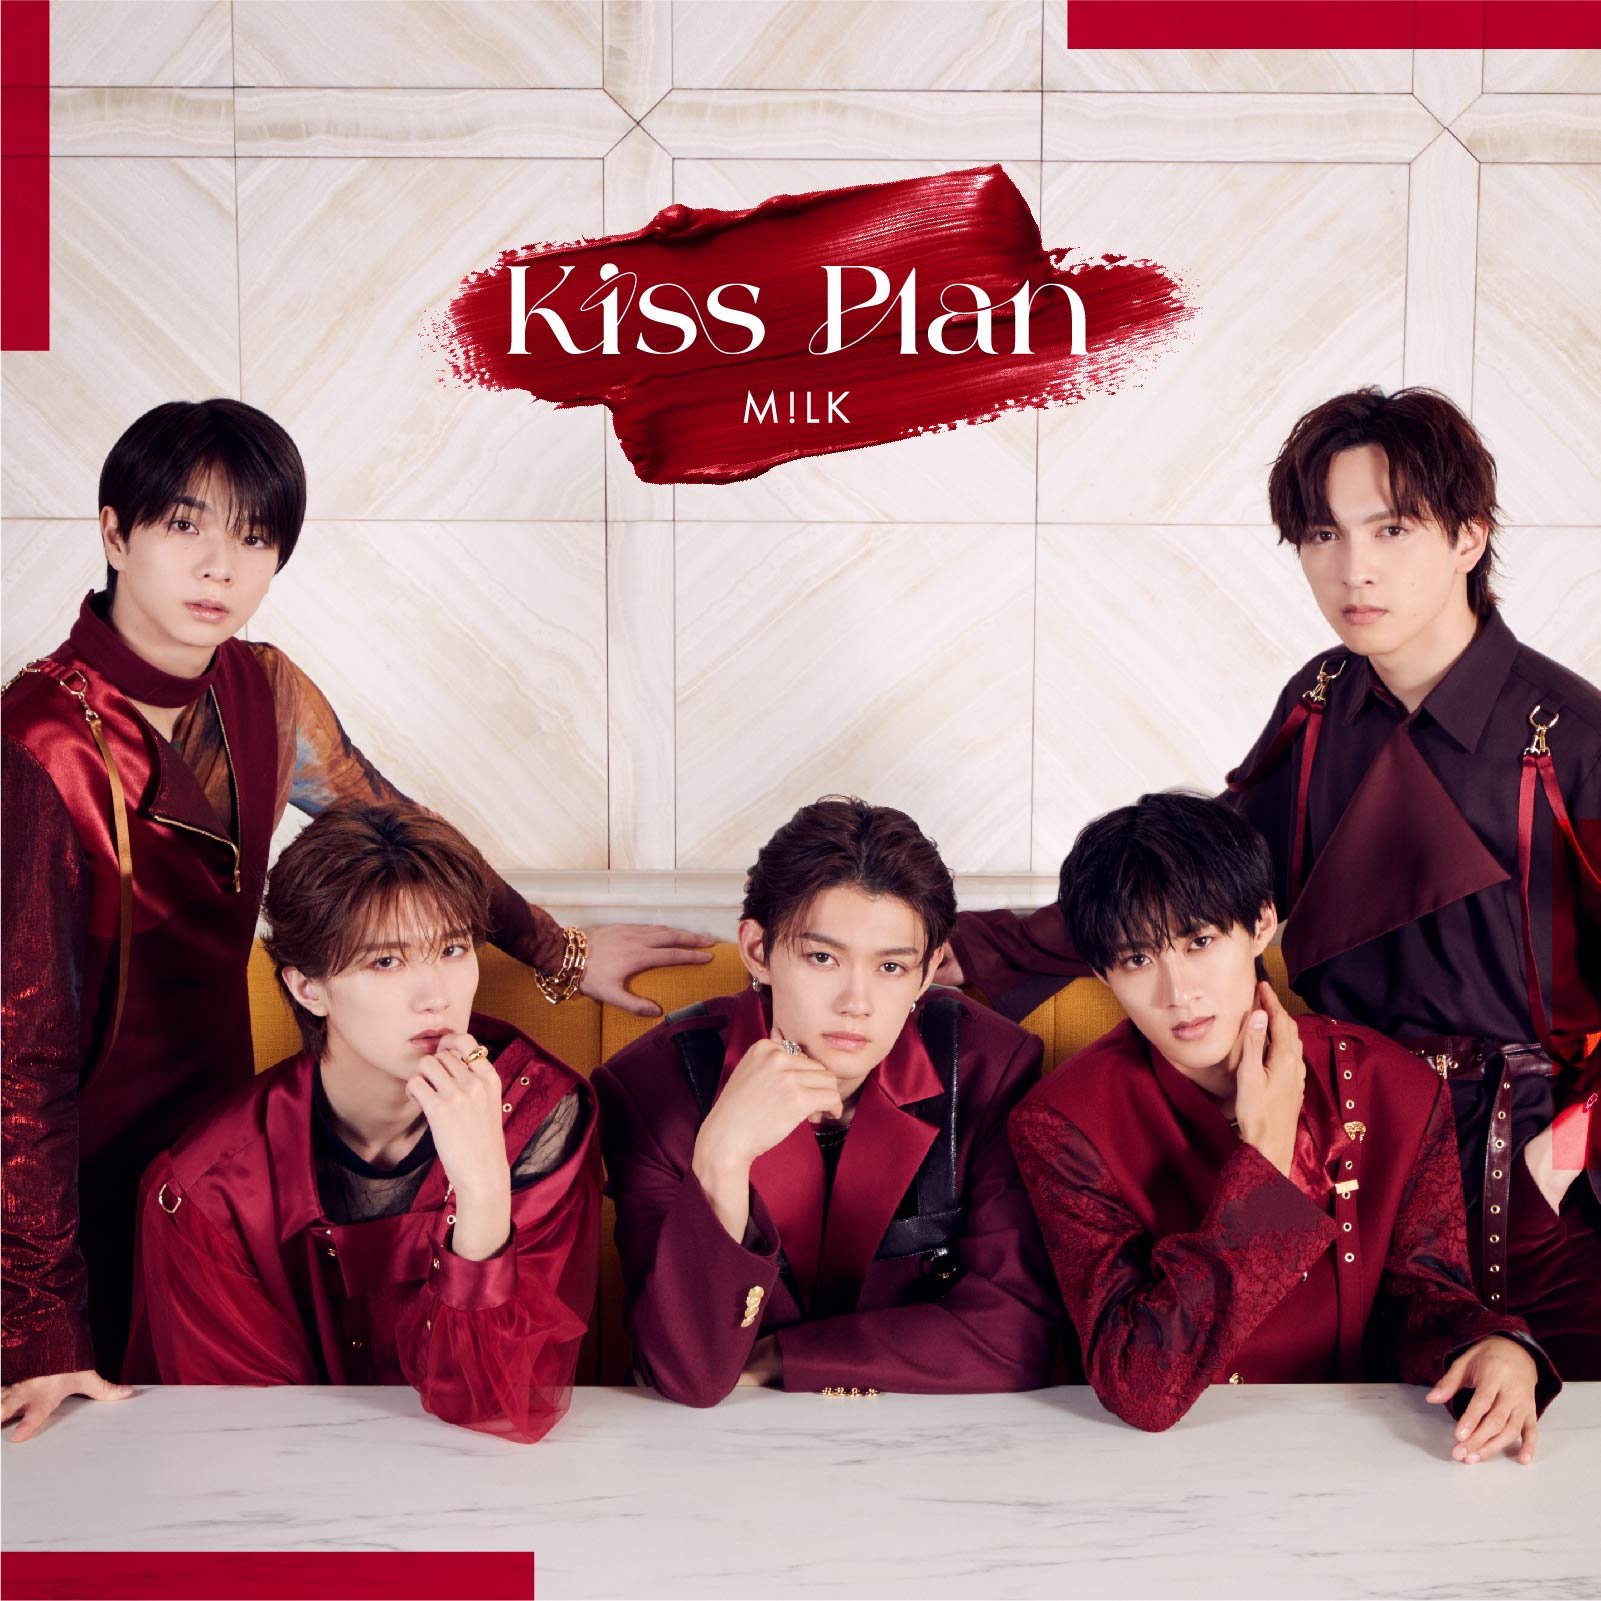 M!LK 、1月24日(水)リリースメジャー4thシングル「Kiss Plan」 透ける